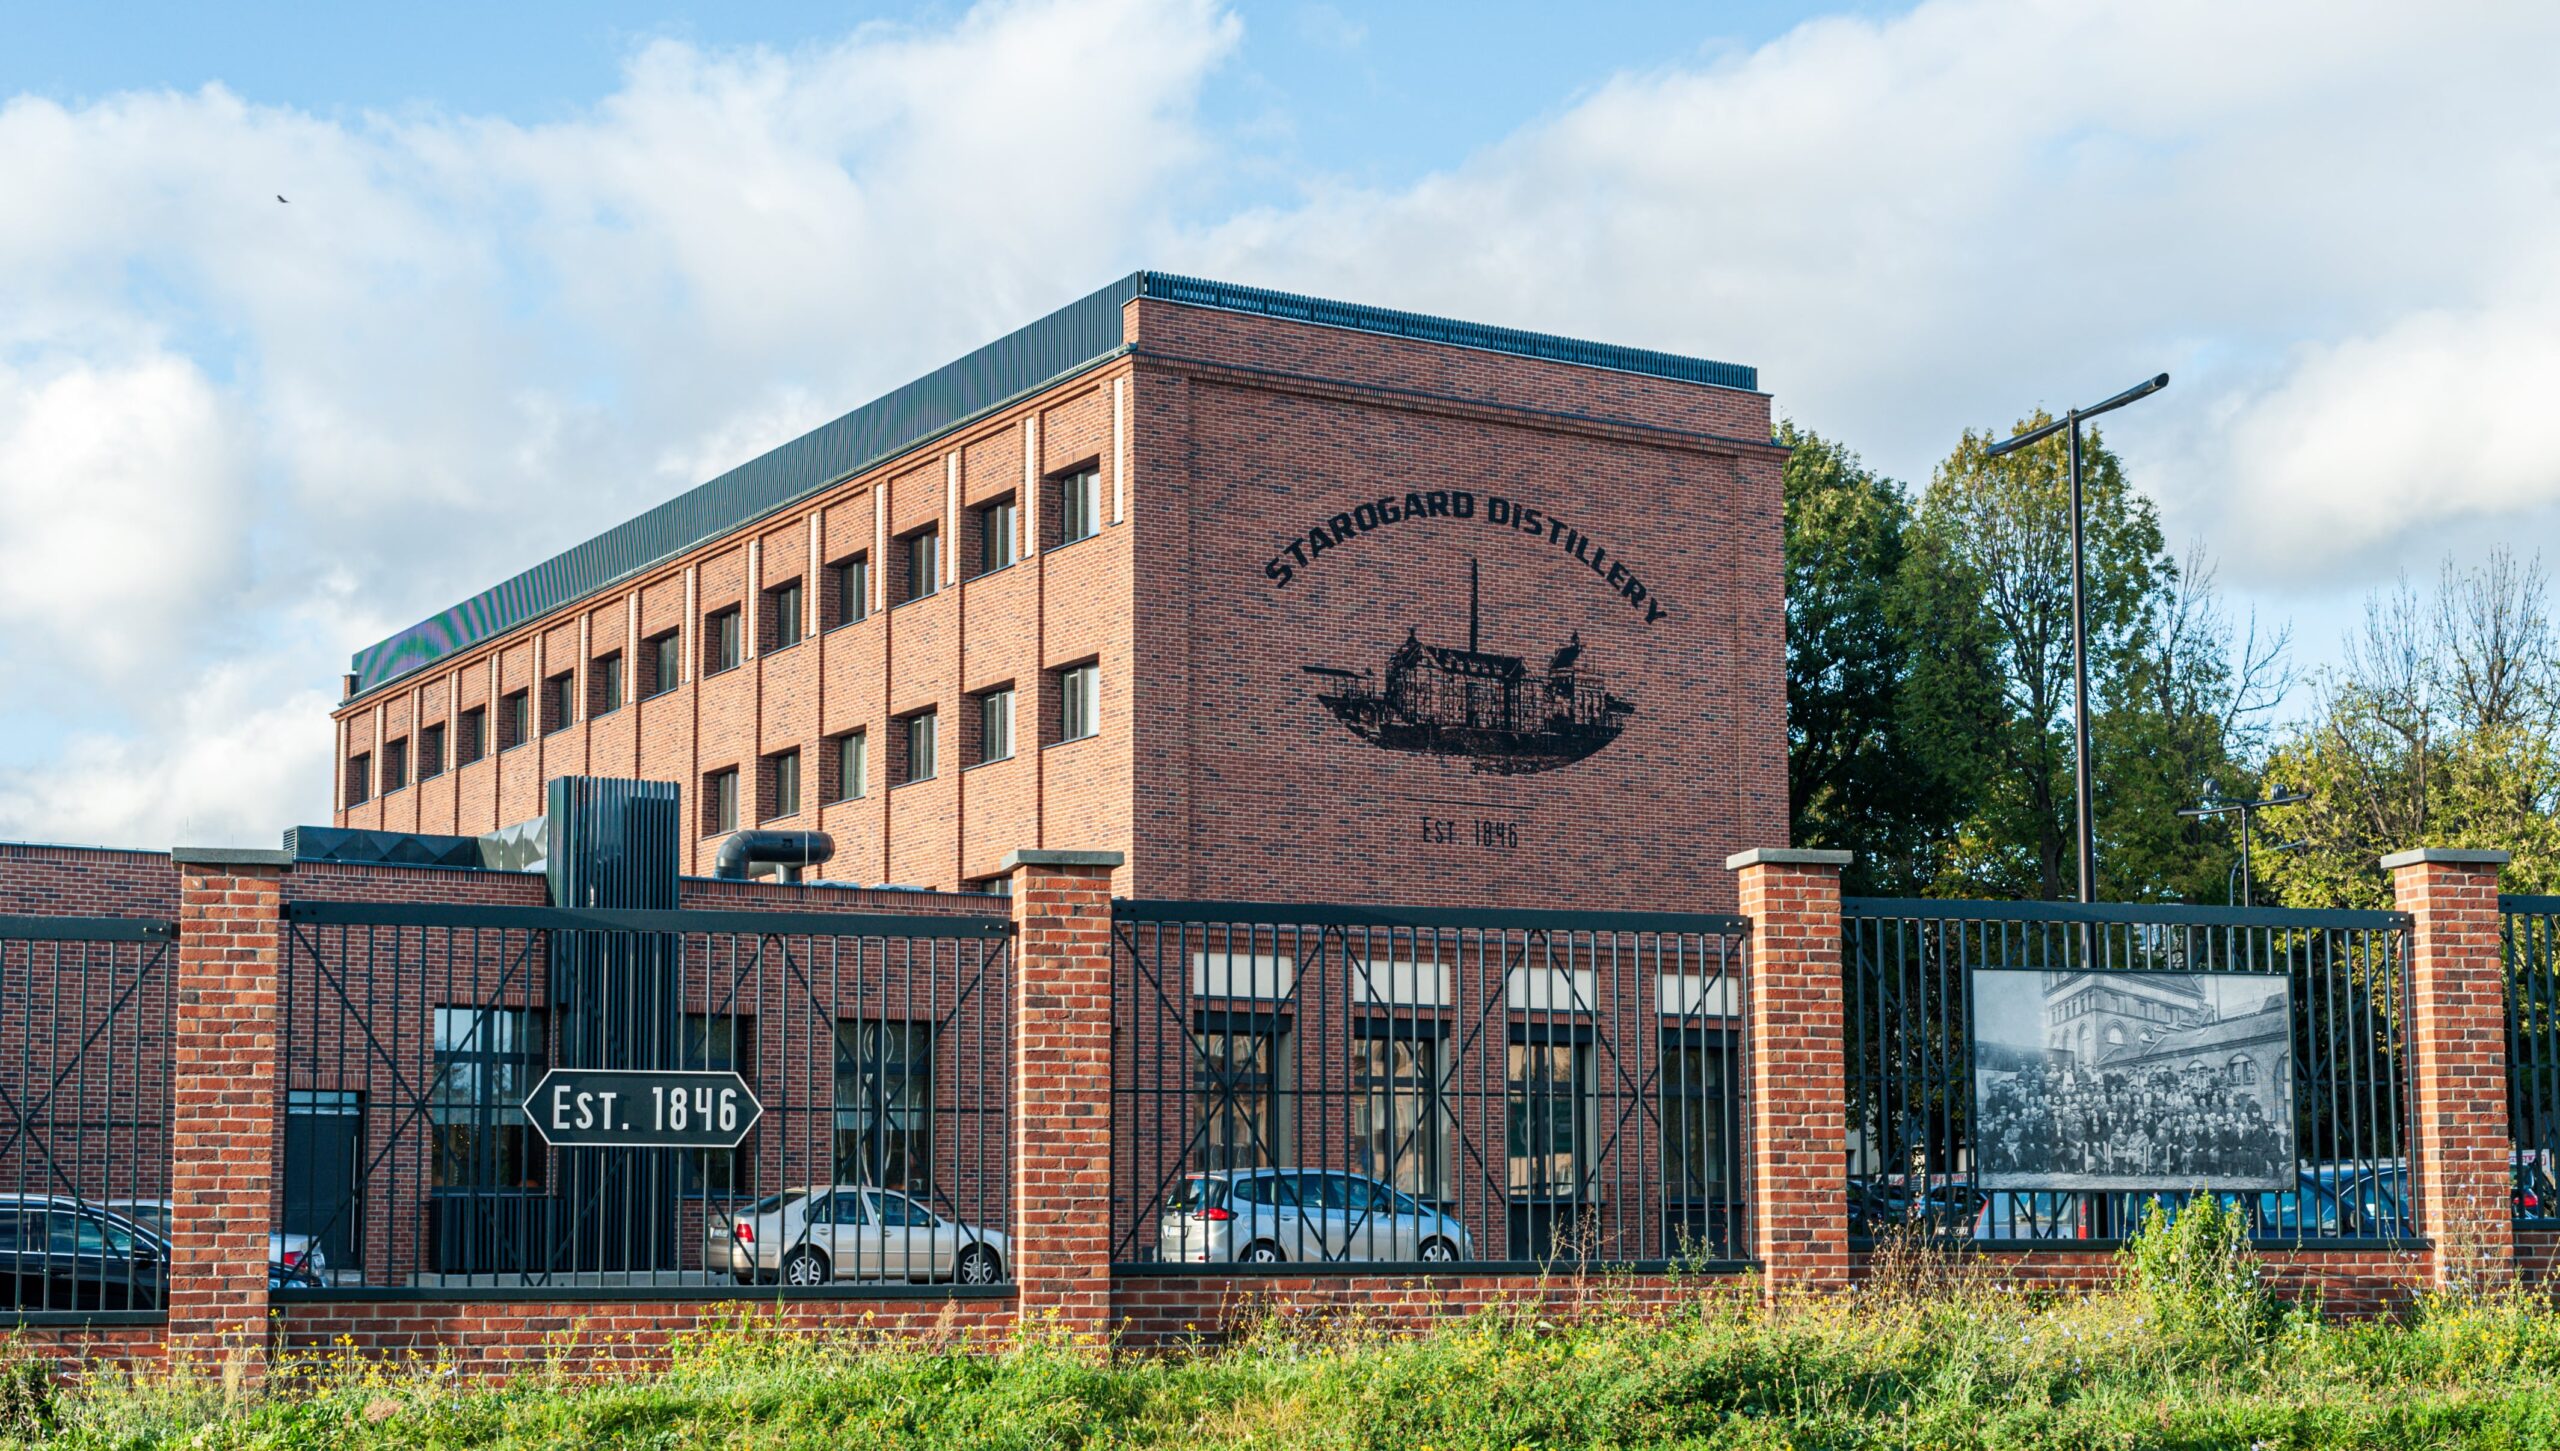 Odnowiony budynek biurowy Premium Distillers w Starogardzie Gdańskim. 